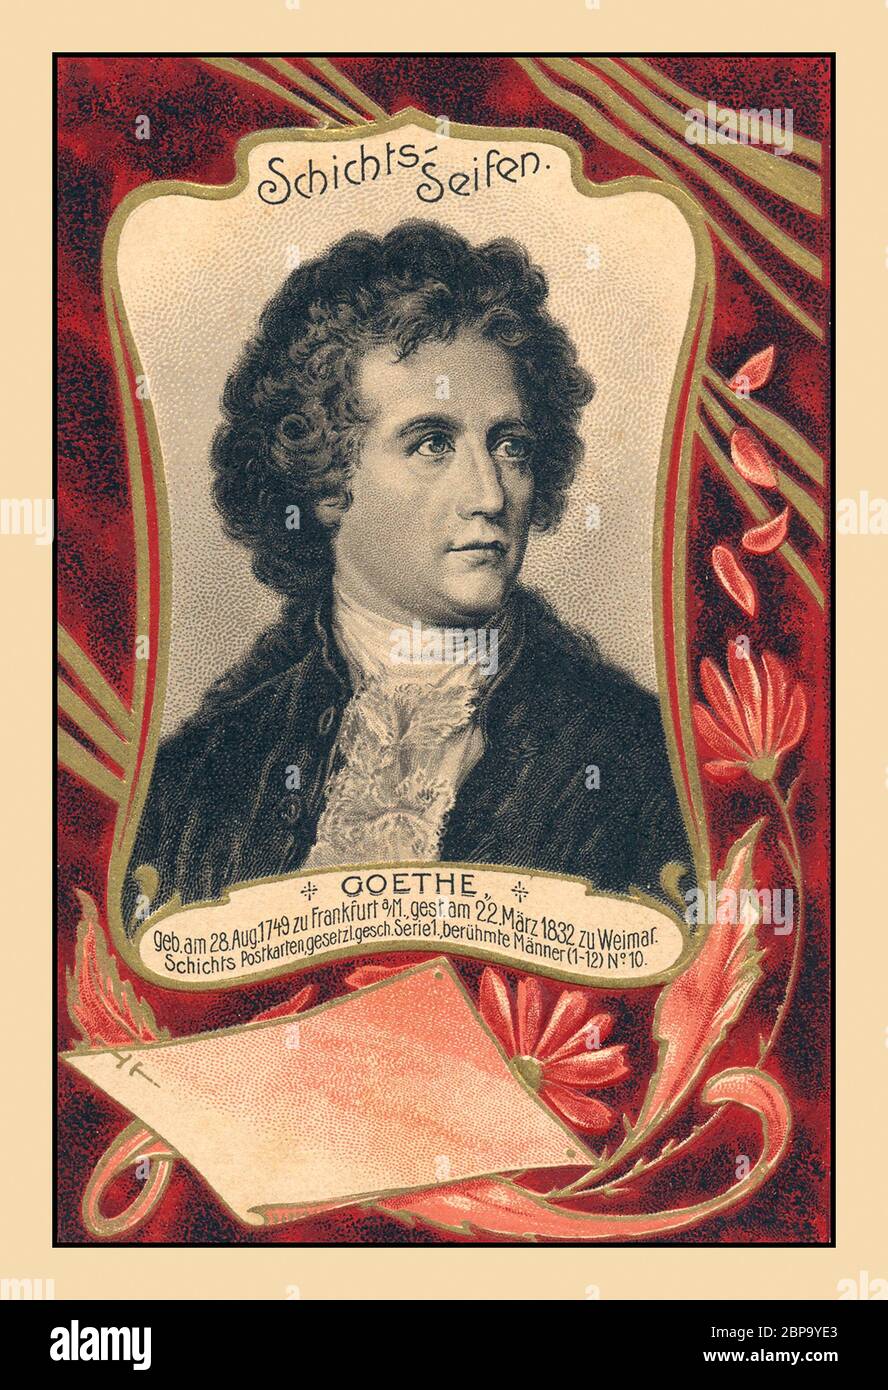 GOETHE Johann Wolfgang von Goethe archivio cartolina storica. Scrittore e statista tedesco di fama, considerato la più grande figura letteraria tedesca dell'epoca moderna. 28 agosto 1749 – 22 marzo 1832 cartolina commemorativa per poster come omaggio alla sua vita variegata Foto Stock